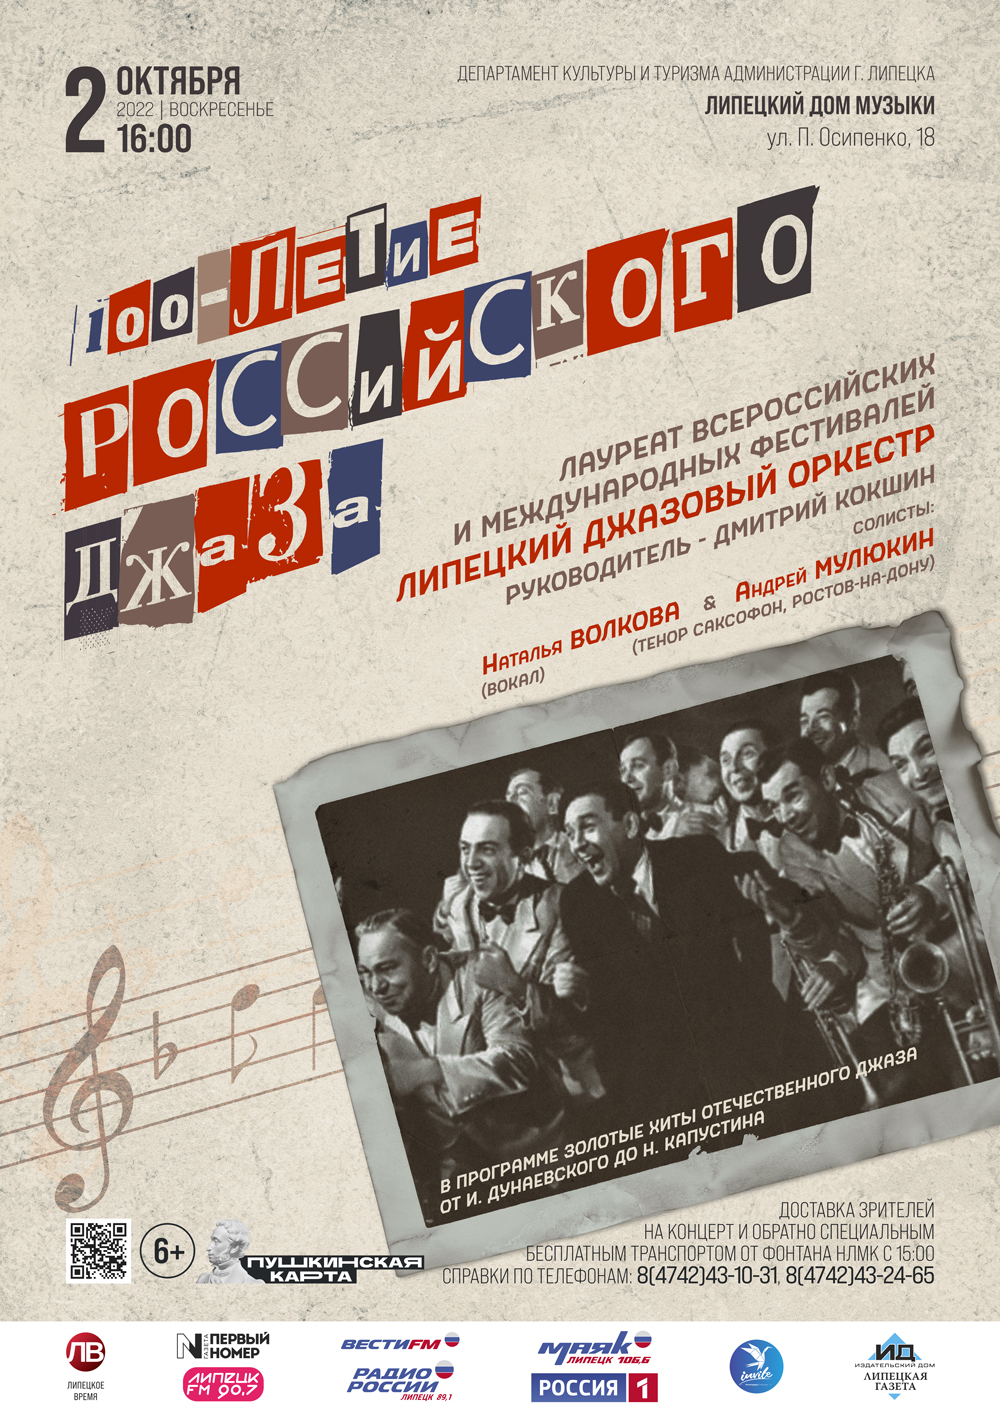 100-летие Российского джаза (02.10.202 в 16:00)